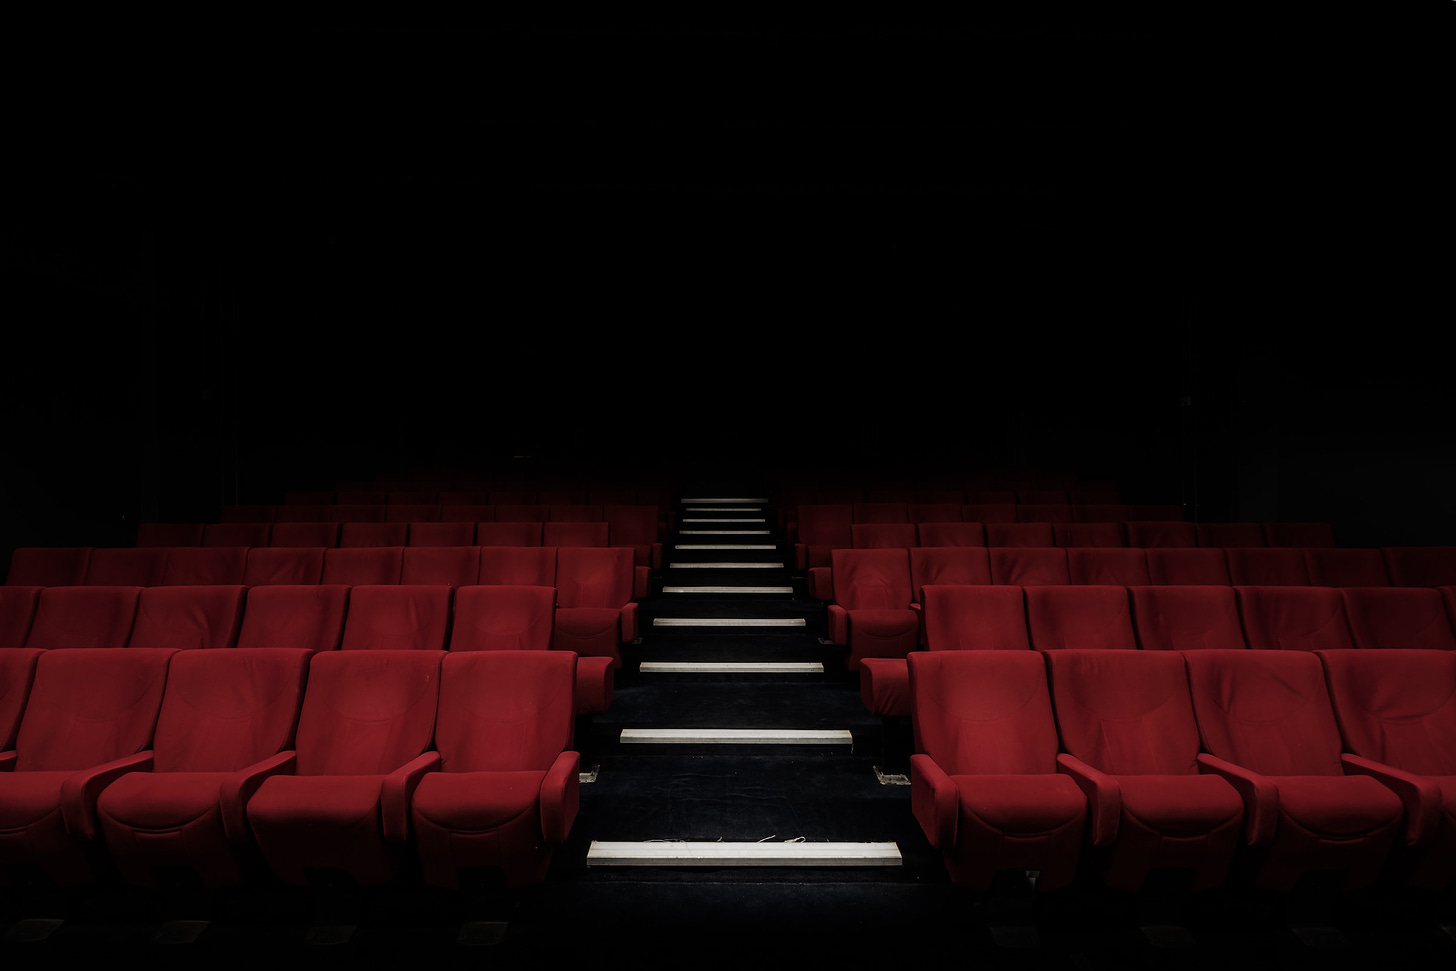 File di poltrone rosse del cinema viste dal davanti, con lo sfondo che sfuma verso il nero. Nella parte centrale scalini neri con bordo bianco che separano le due sezioni di poltrone.